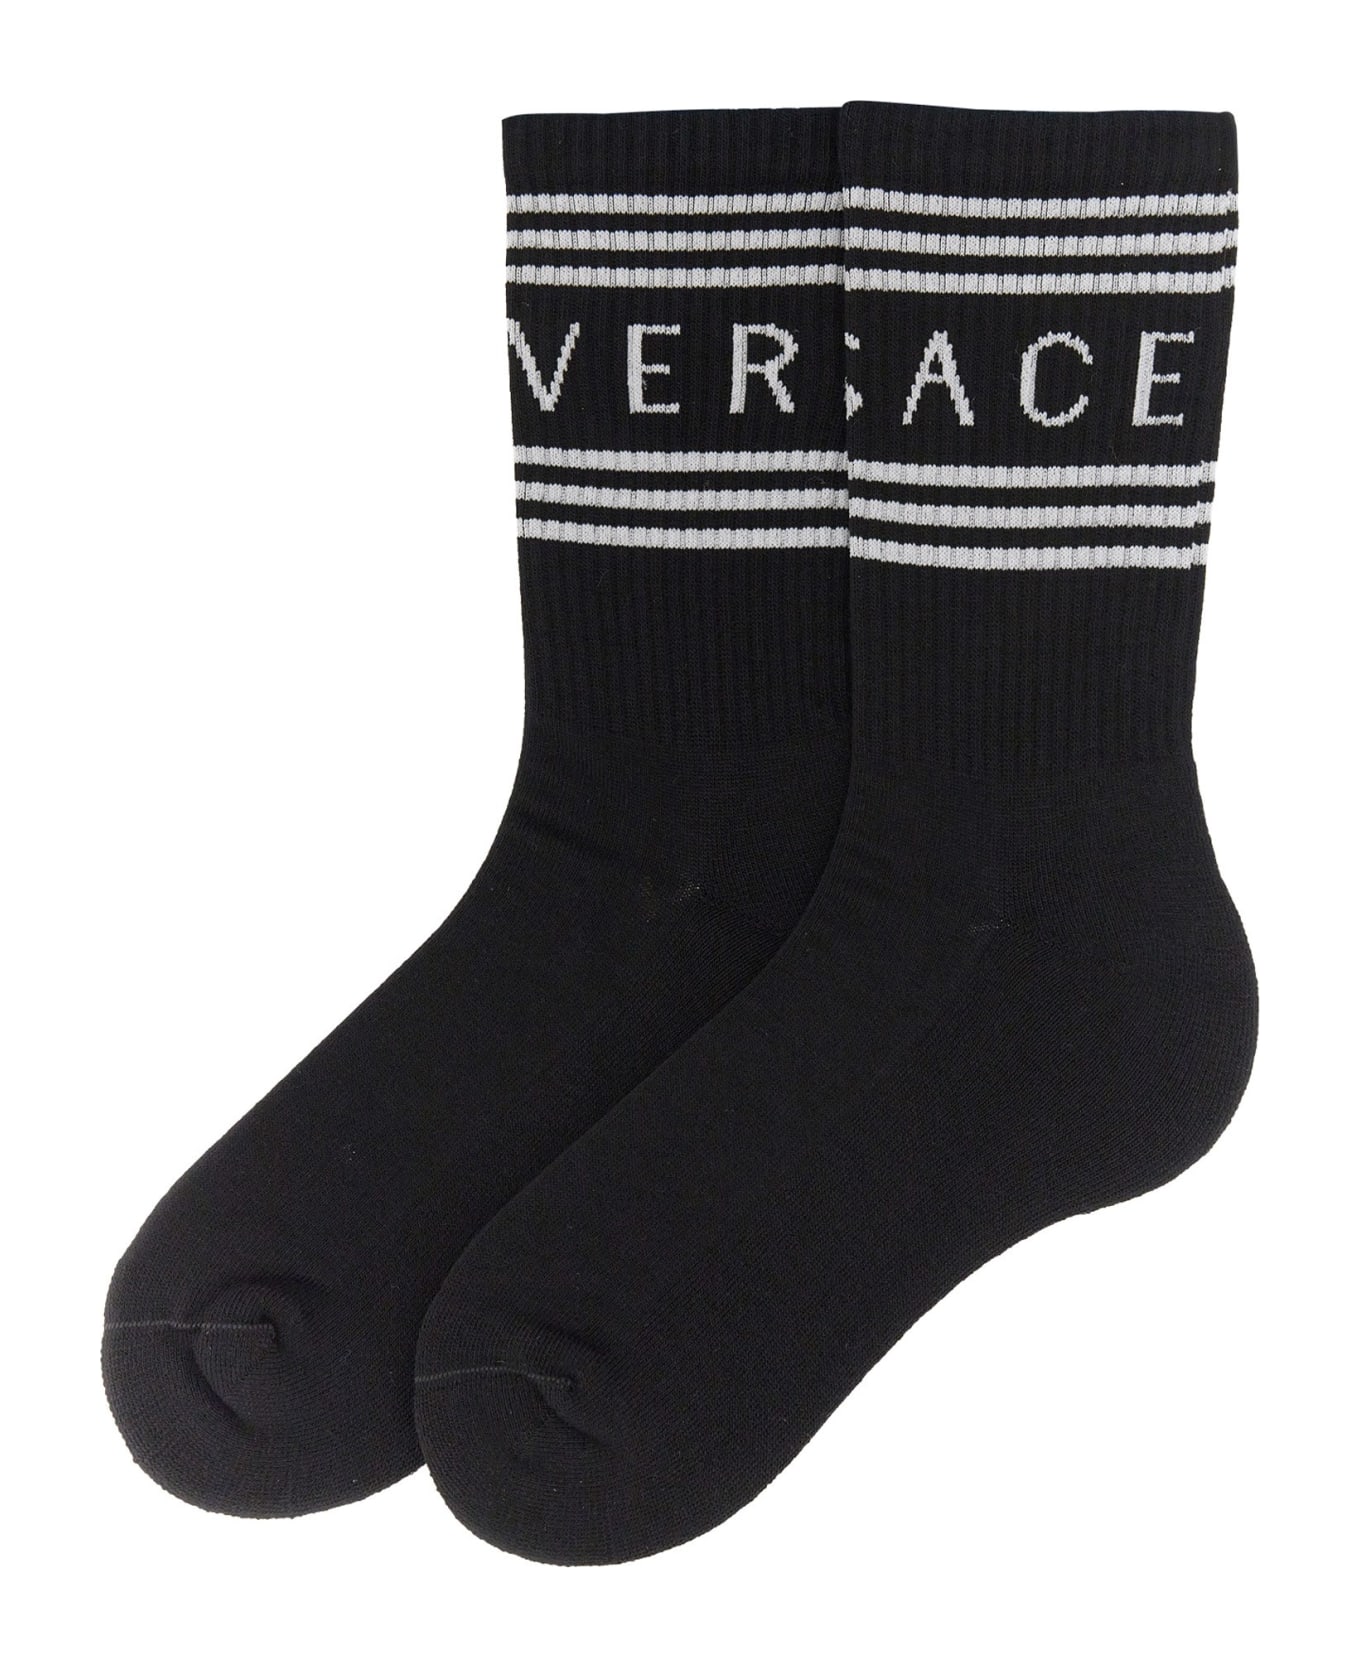 Versace Logo Socks - Black White